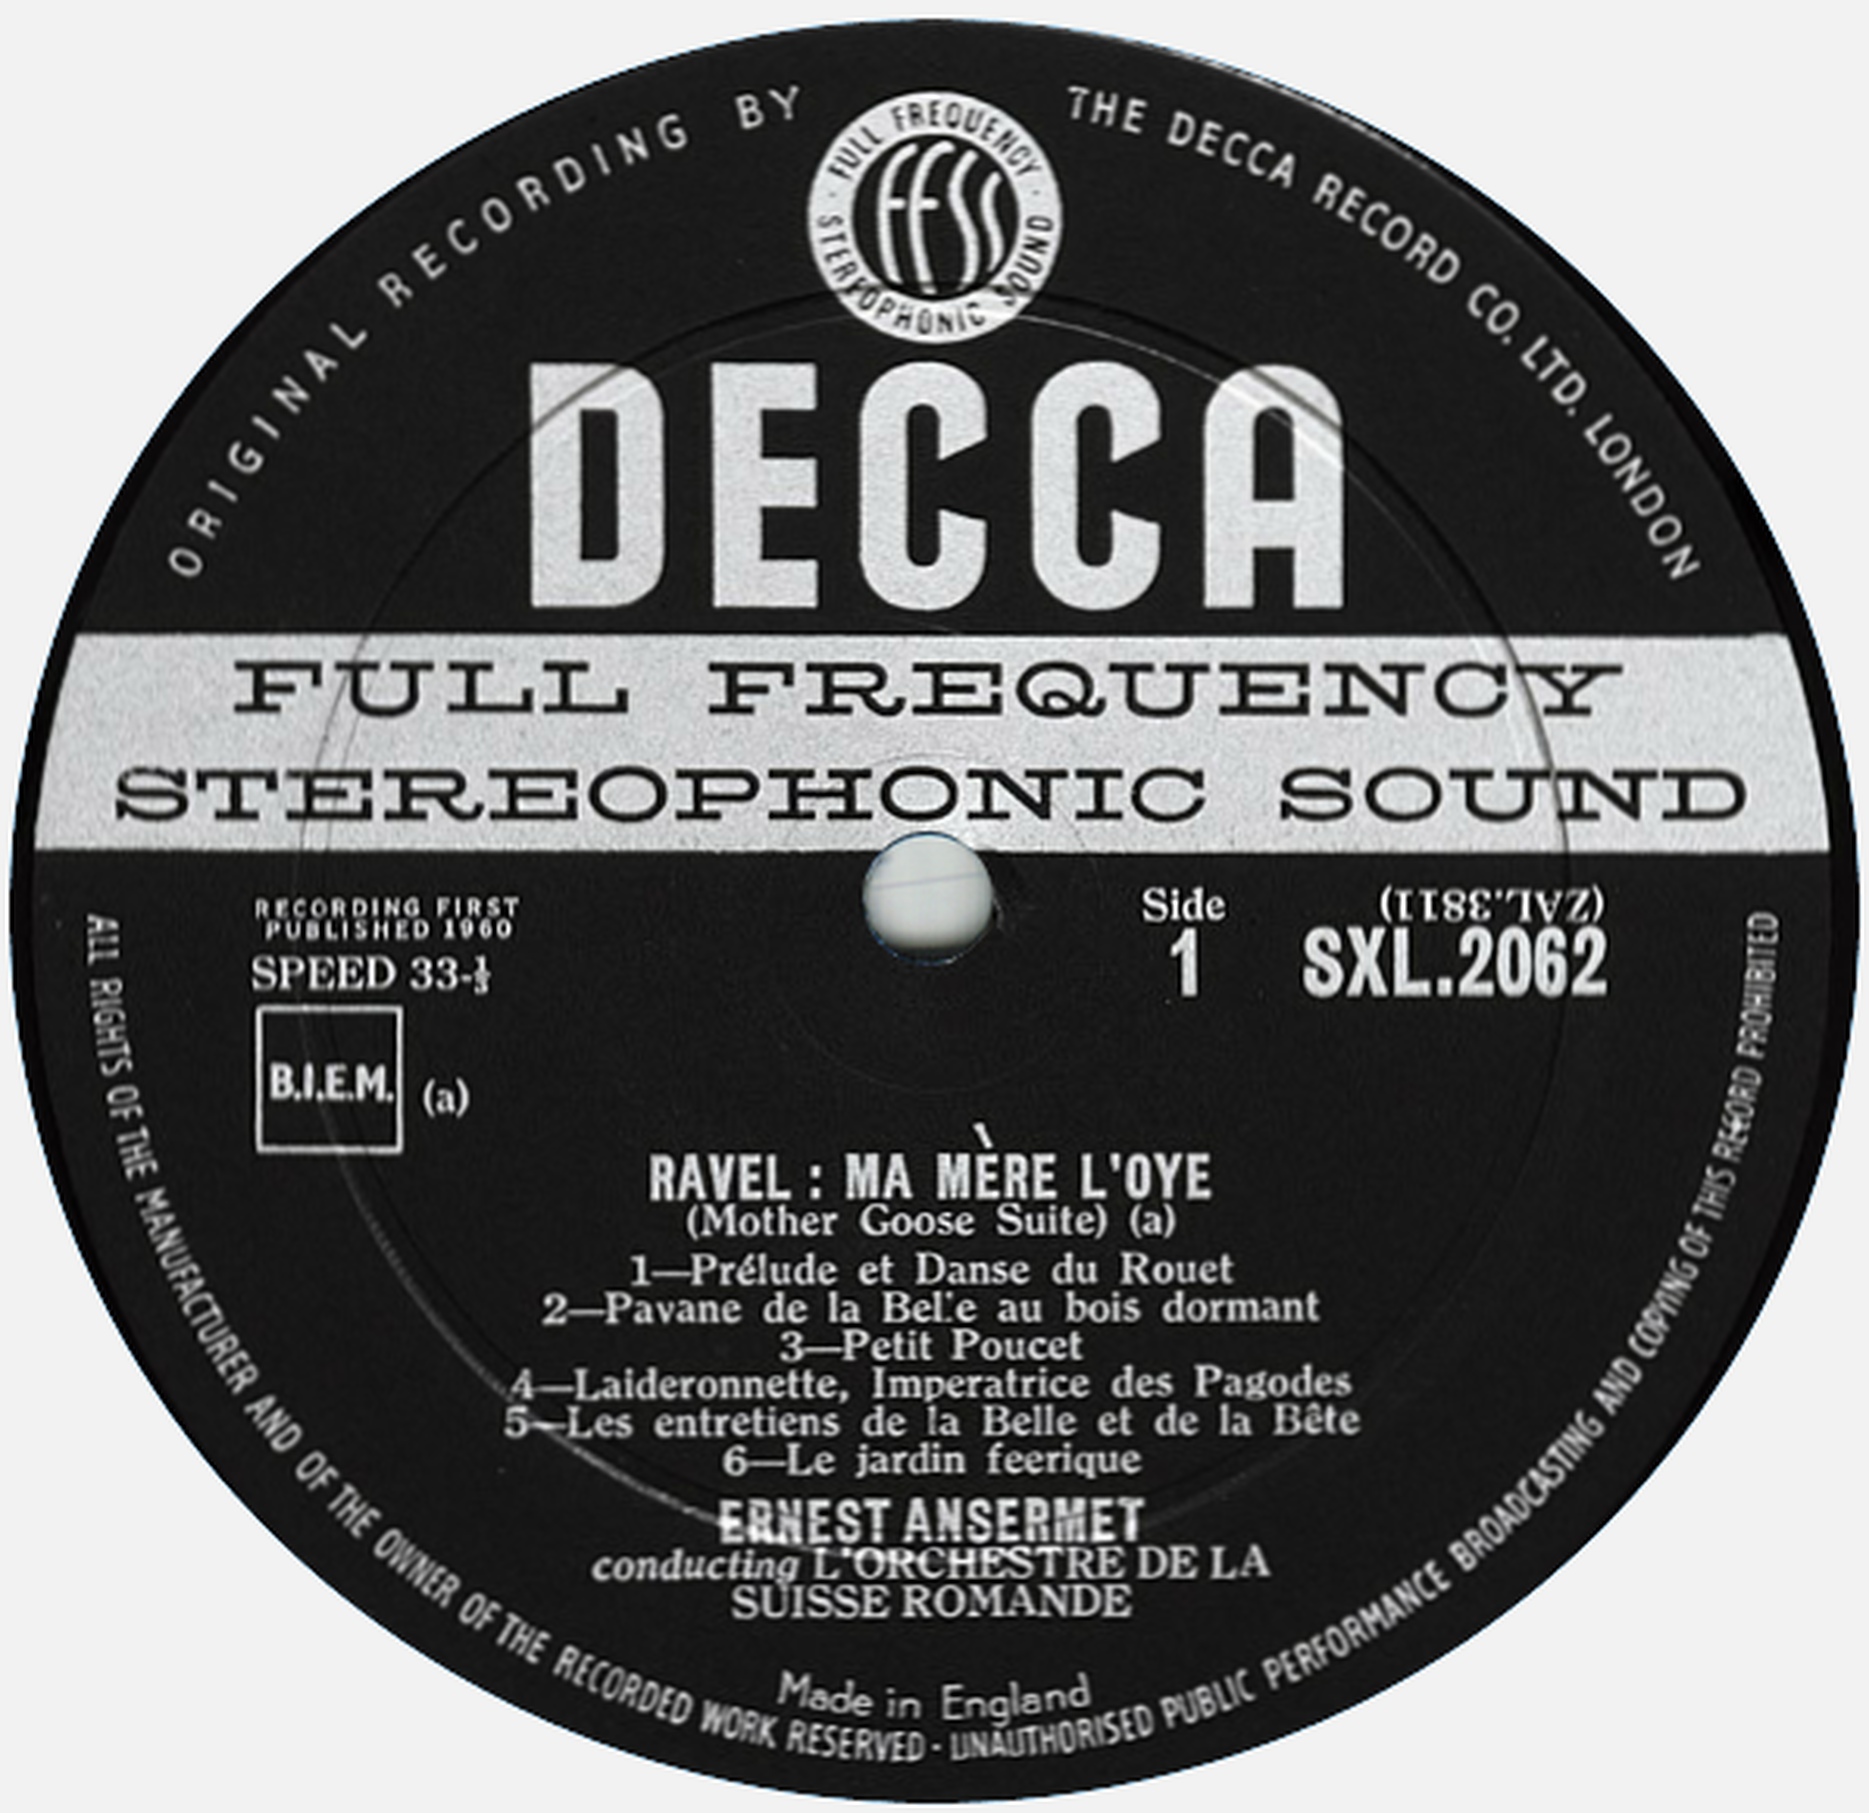 Disque Decca SXL 2062, étiquette recto, cliquer pour une vue agrandie